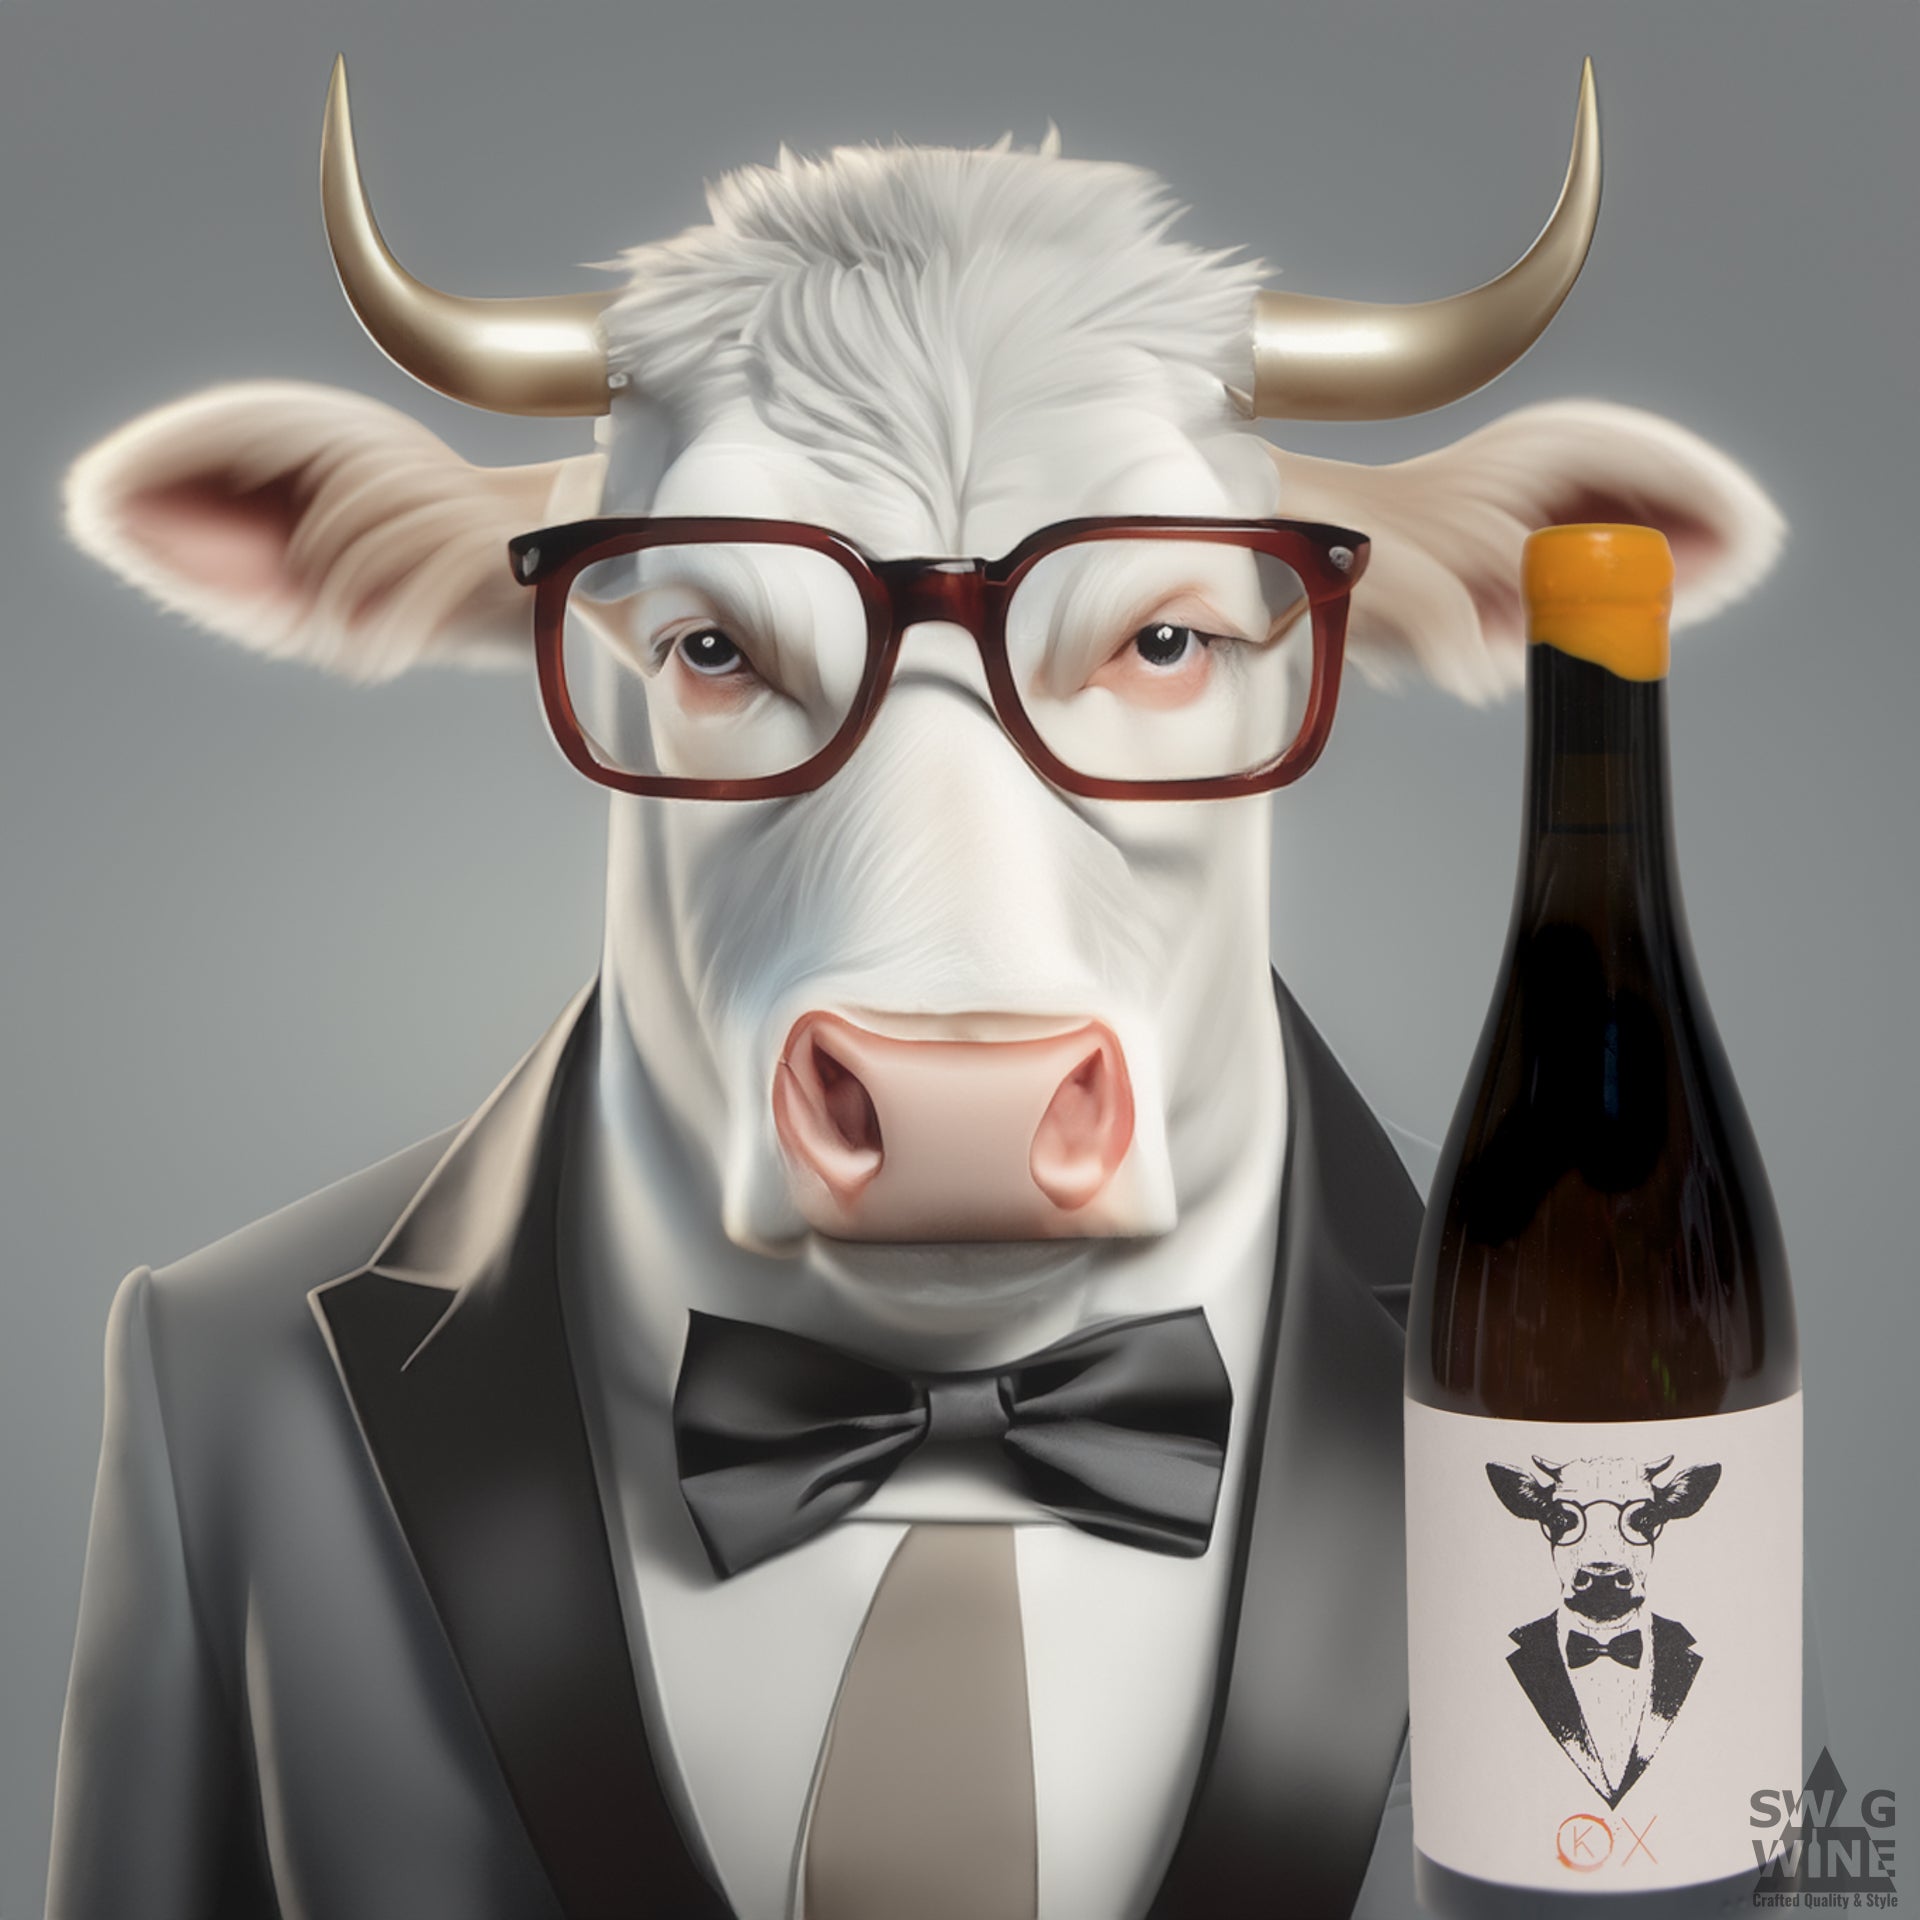 OX Orange Wine Grauburgunder Kuhn Weine Freiburg Swagwine Wein mit Kuh im Anzug